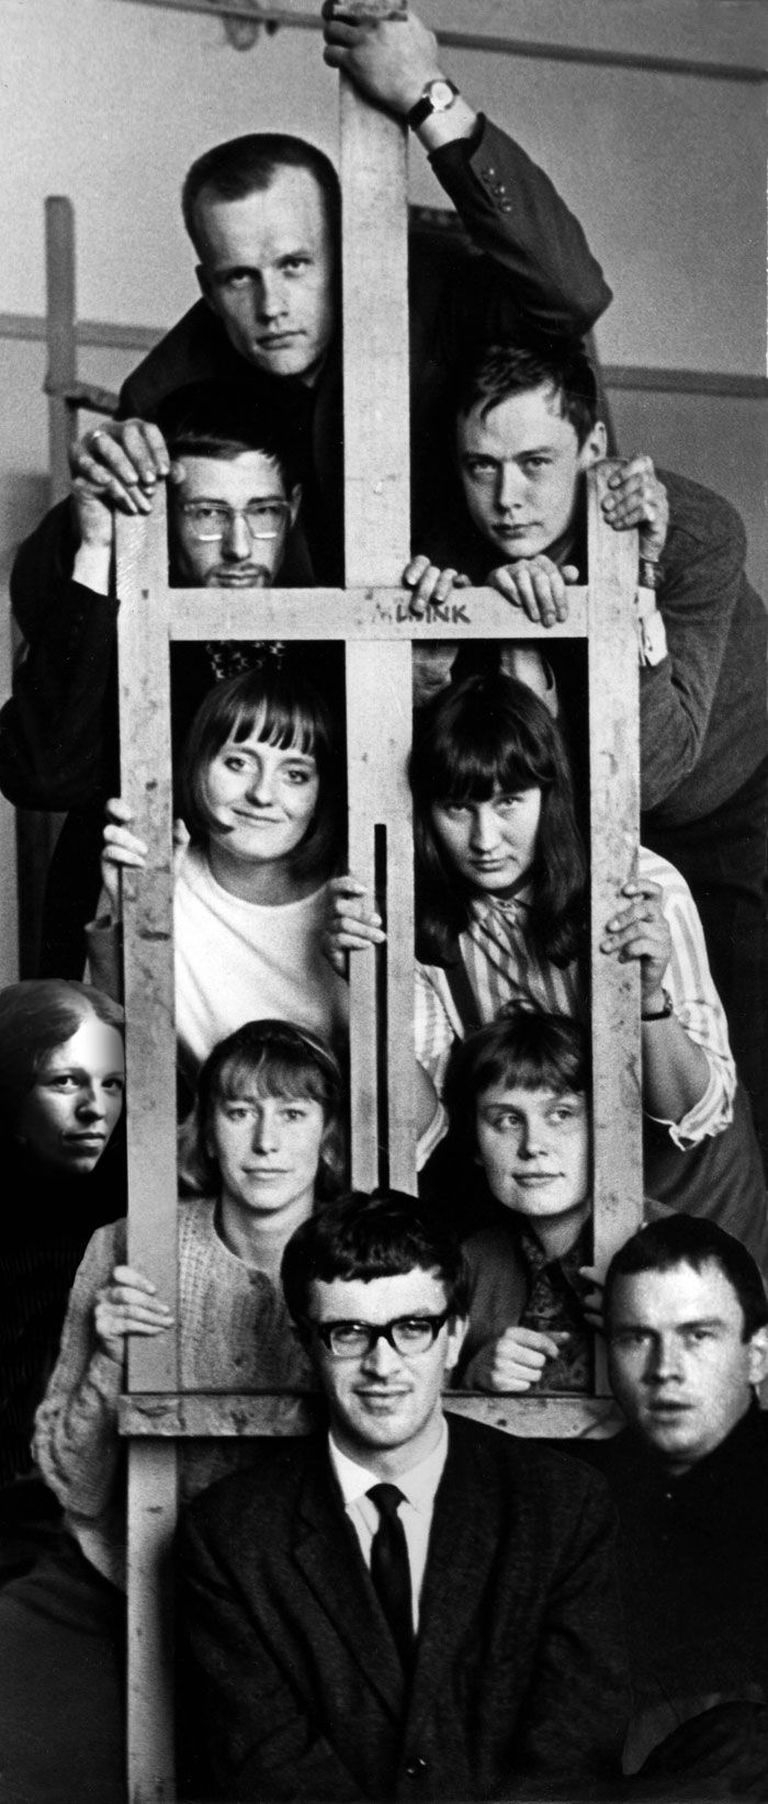 Члены арт-группы ANK'64 в газете Noorte Hääl в 1966 году: наверху Юри Аррак, во втором ряду сверху слева Тынис Лаанемаа, справа Энно Оотсинг, в третьем ряду слева Малле Лейс, справа Айли Винт, в четвертом ряду Кристийна Каазик, Тийу Палло, Марью Мутсу, спереди слева Тынис Винт, справа Велло Тамм. На исходной фотографии не было Марью Мутсу и Велло Тамма, они были добавлены позже.